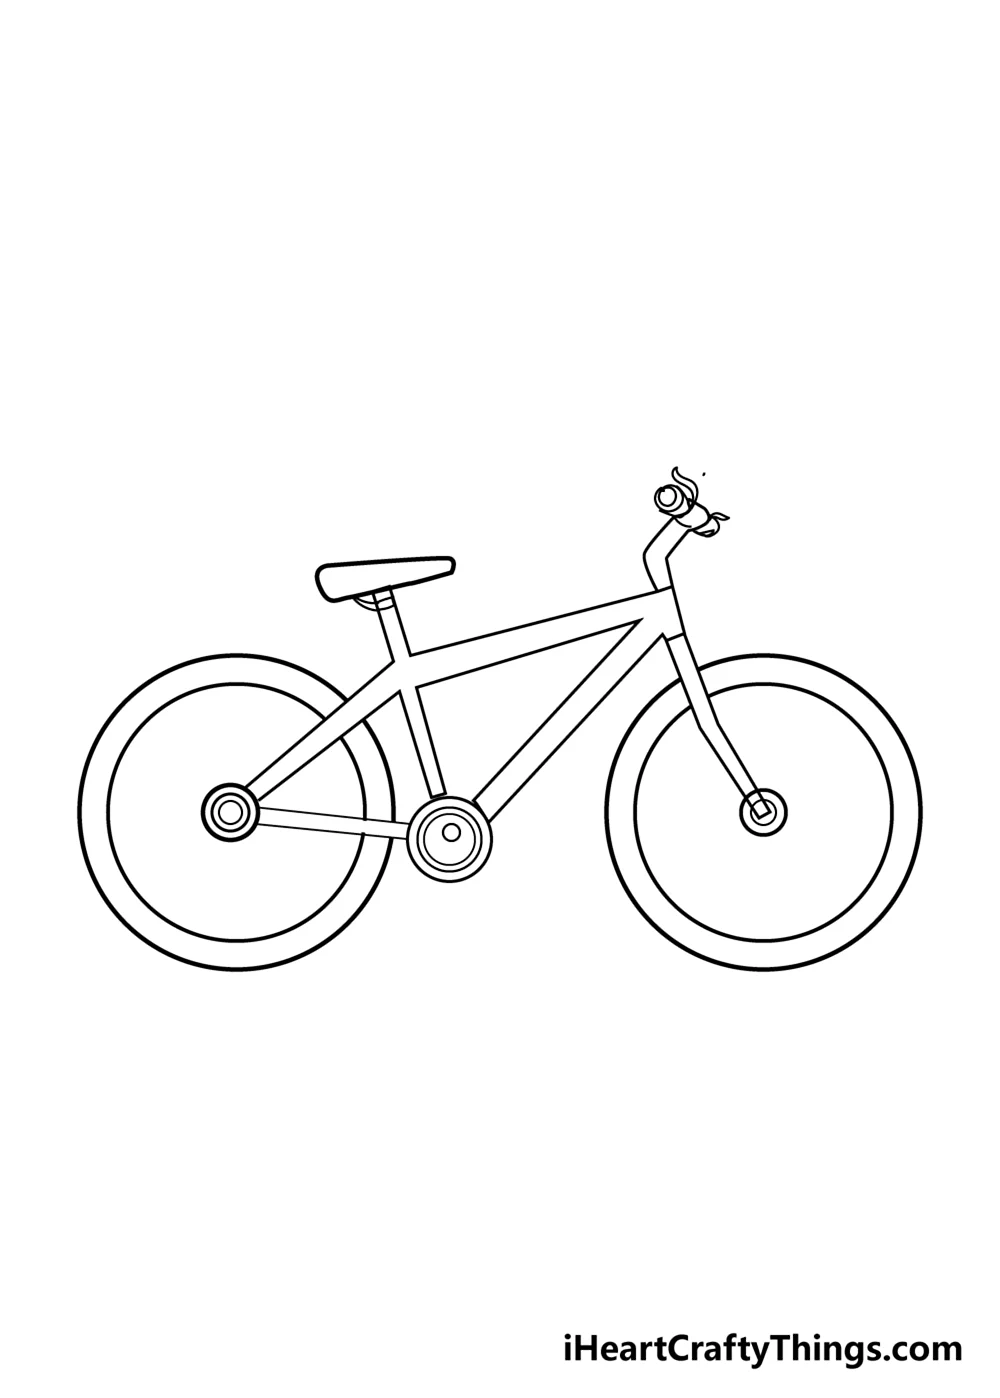 Велосипед рисунок карандашом. Для срисовки